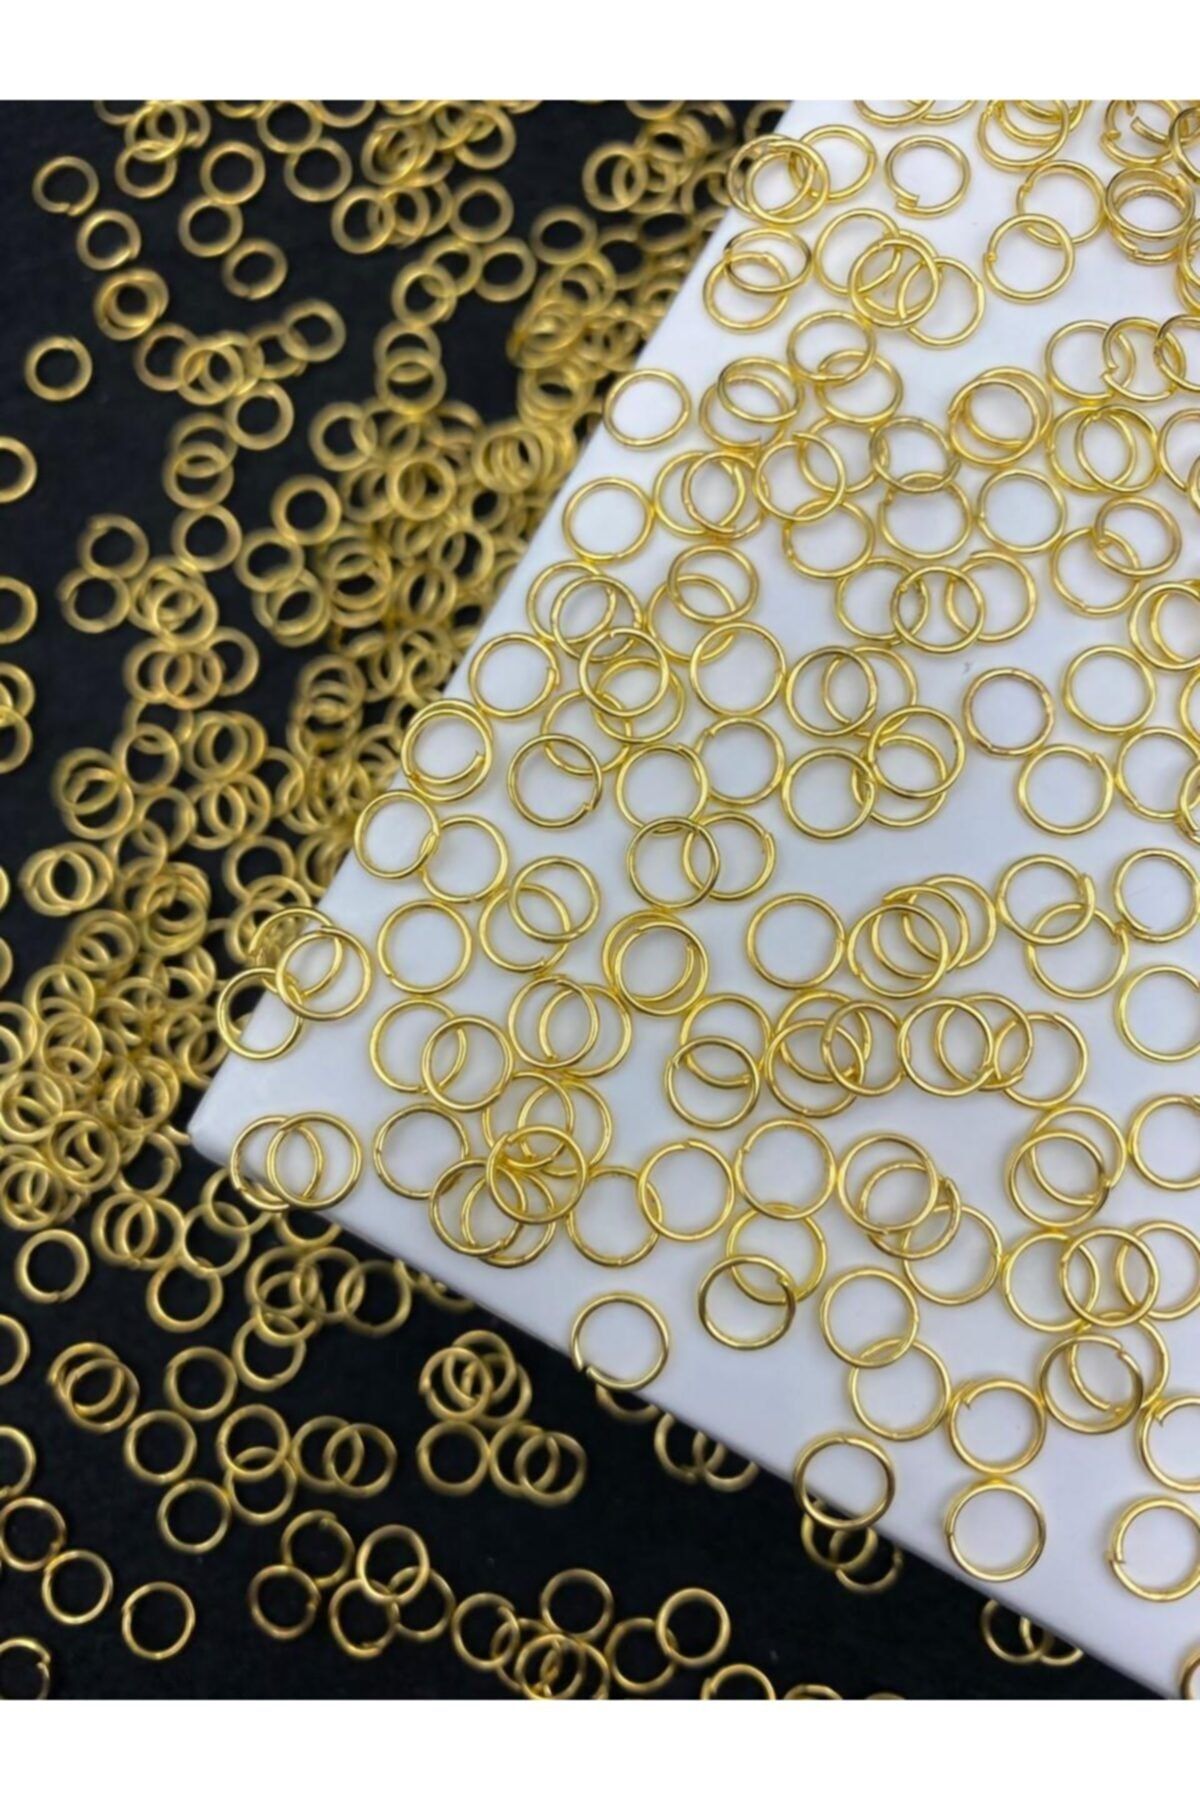 Hedef Bijuteri 25gr Gold / Altın Sarısı Renk 6mm Metal Takı Yapım Halkası ,klips Halka (~400 Adet)